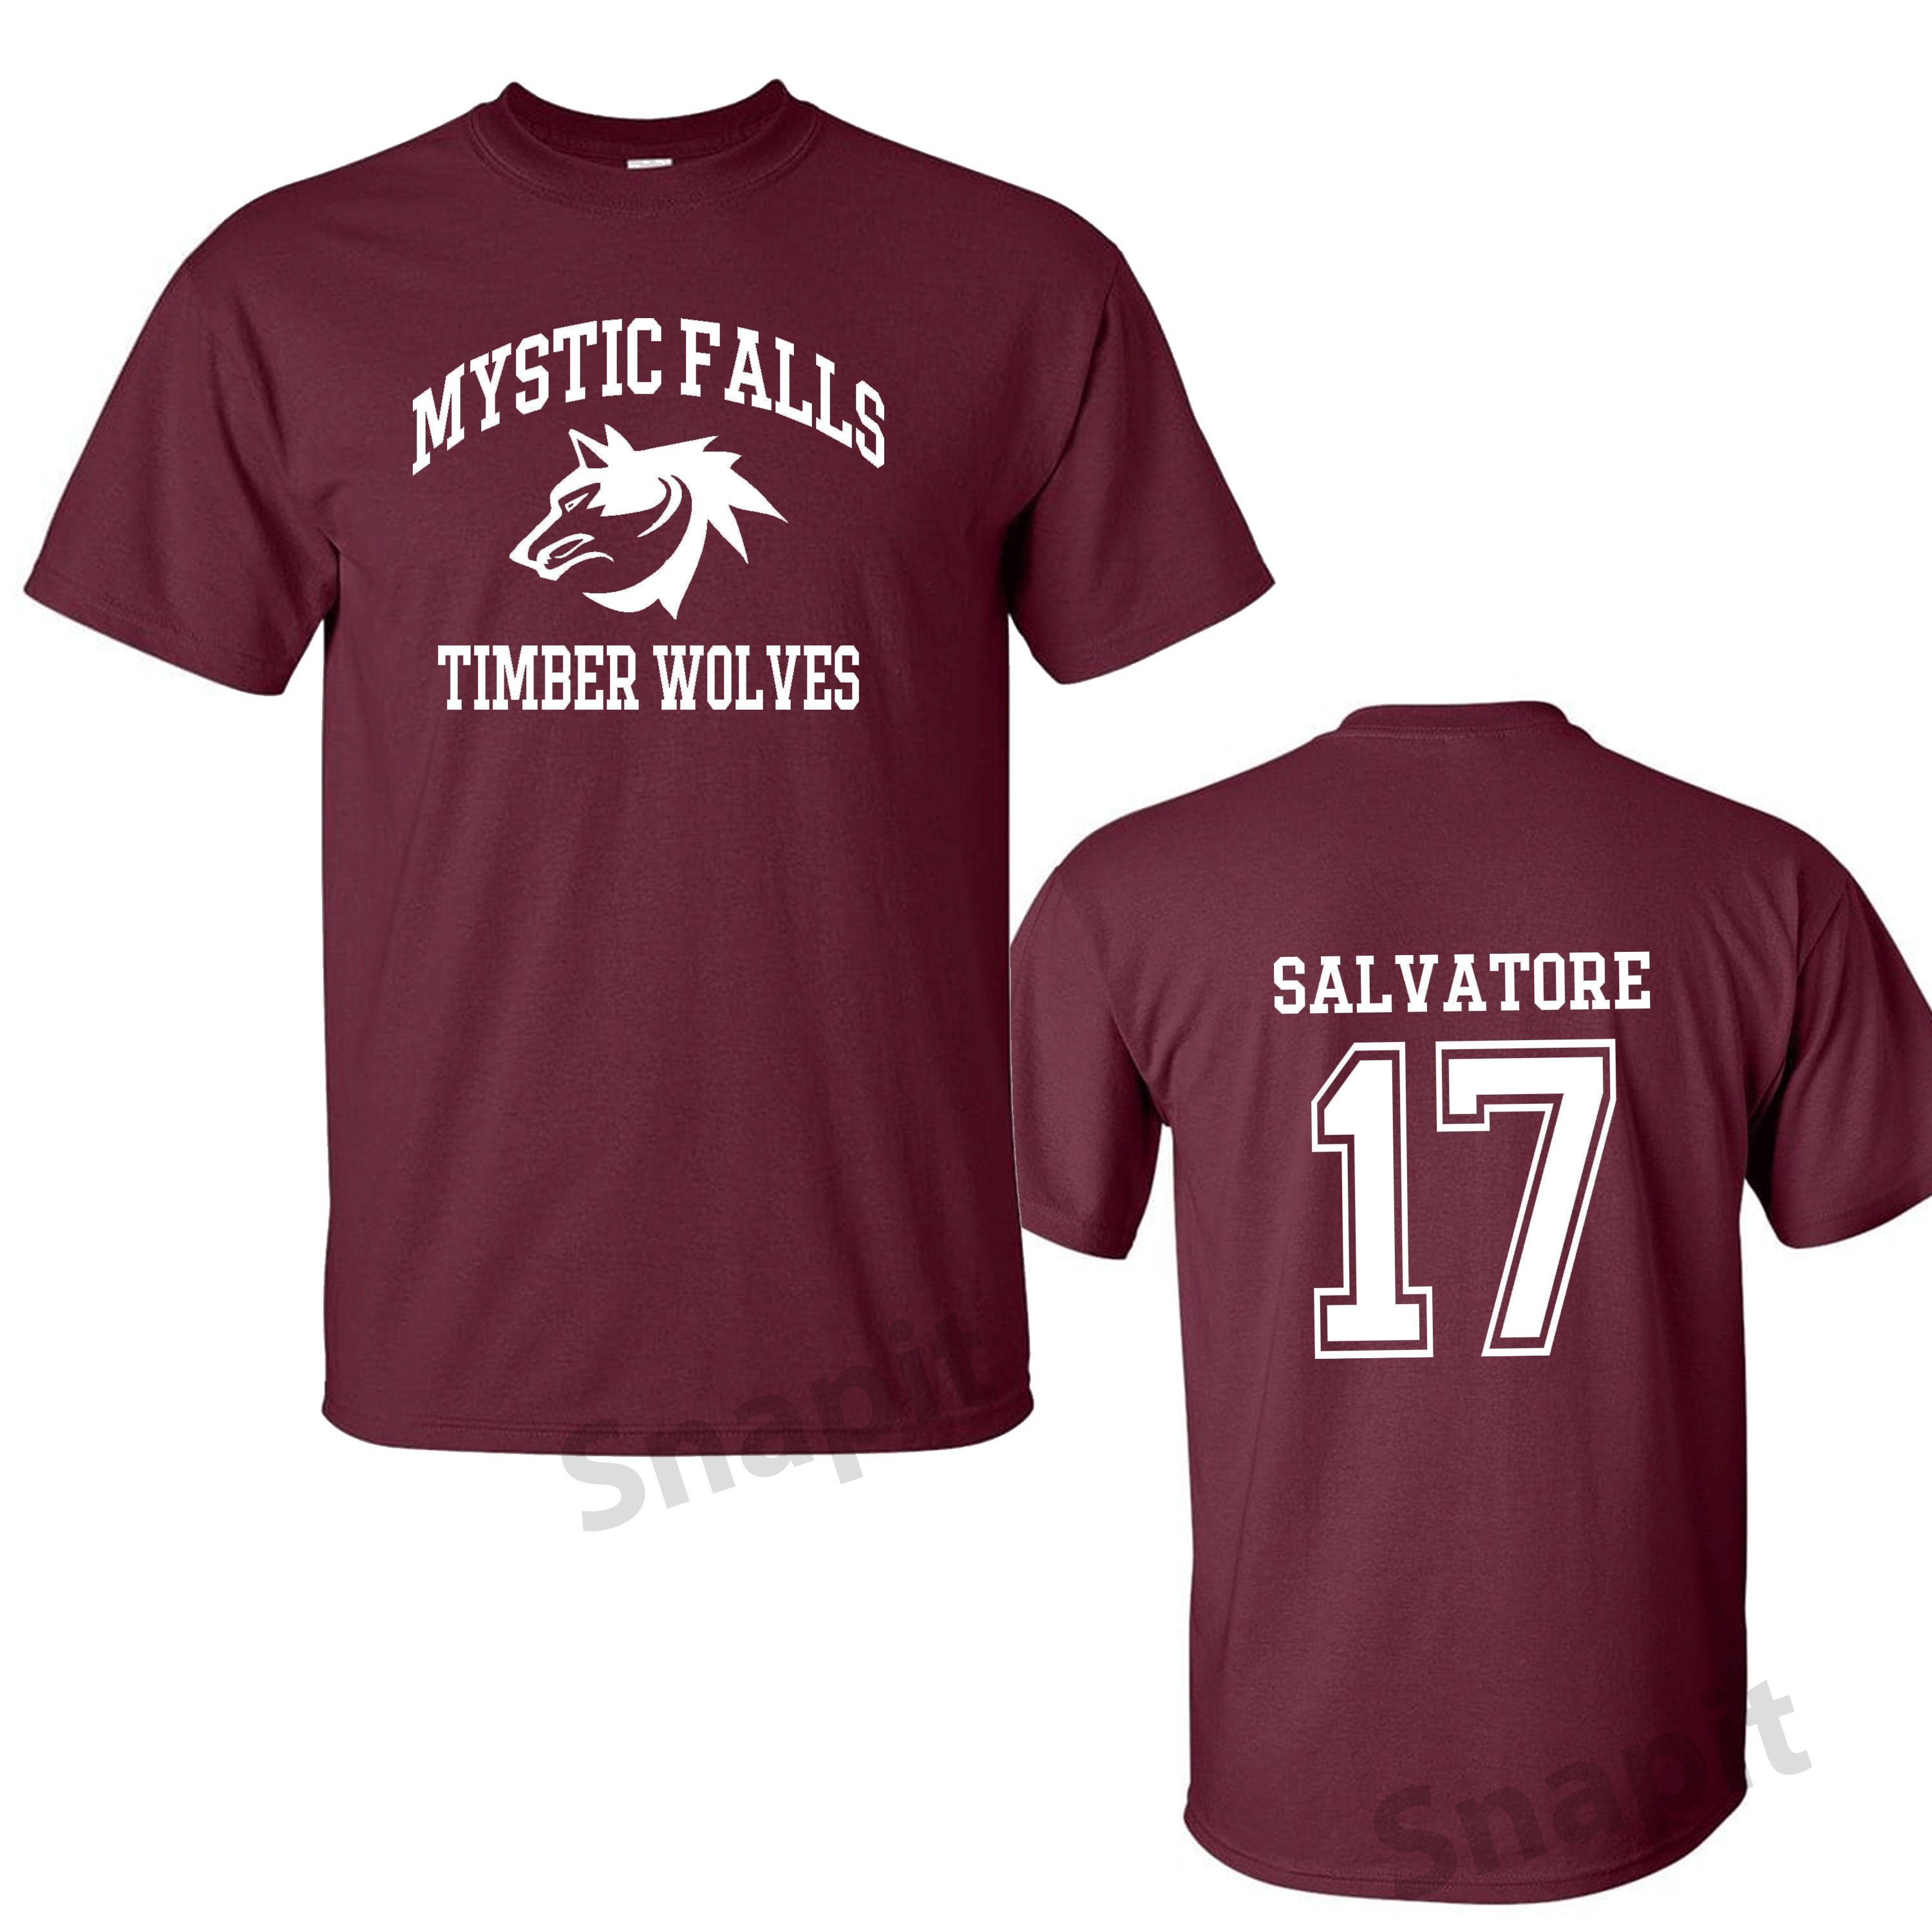 Økologi regeringstid øverst The Vampire Diaries Inspired T-shirt Mystic Falls Salvatore - Etsy